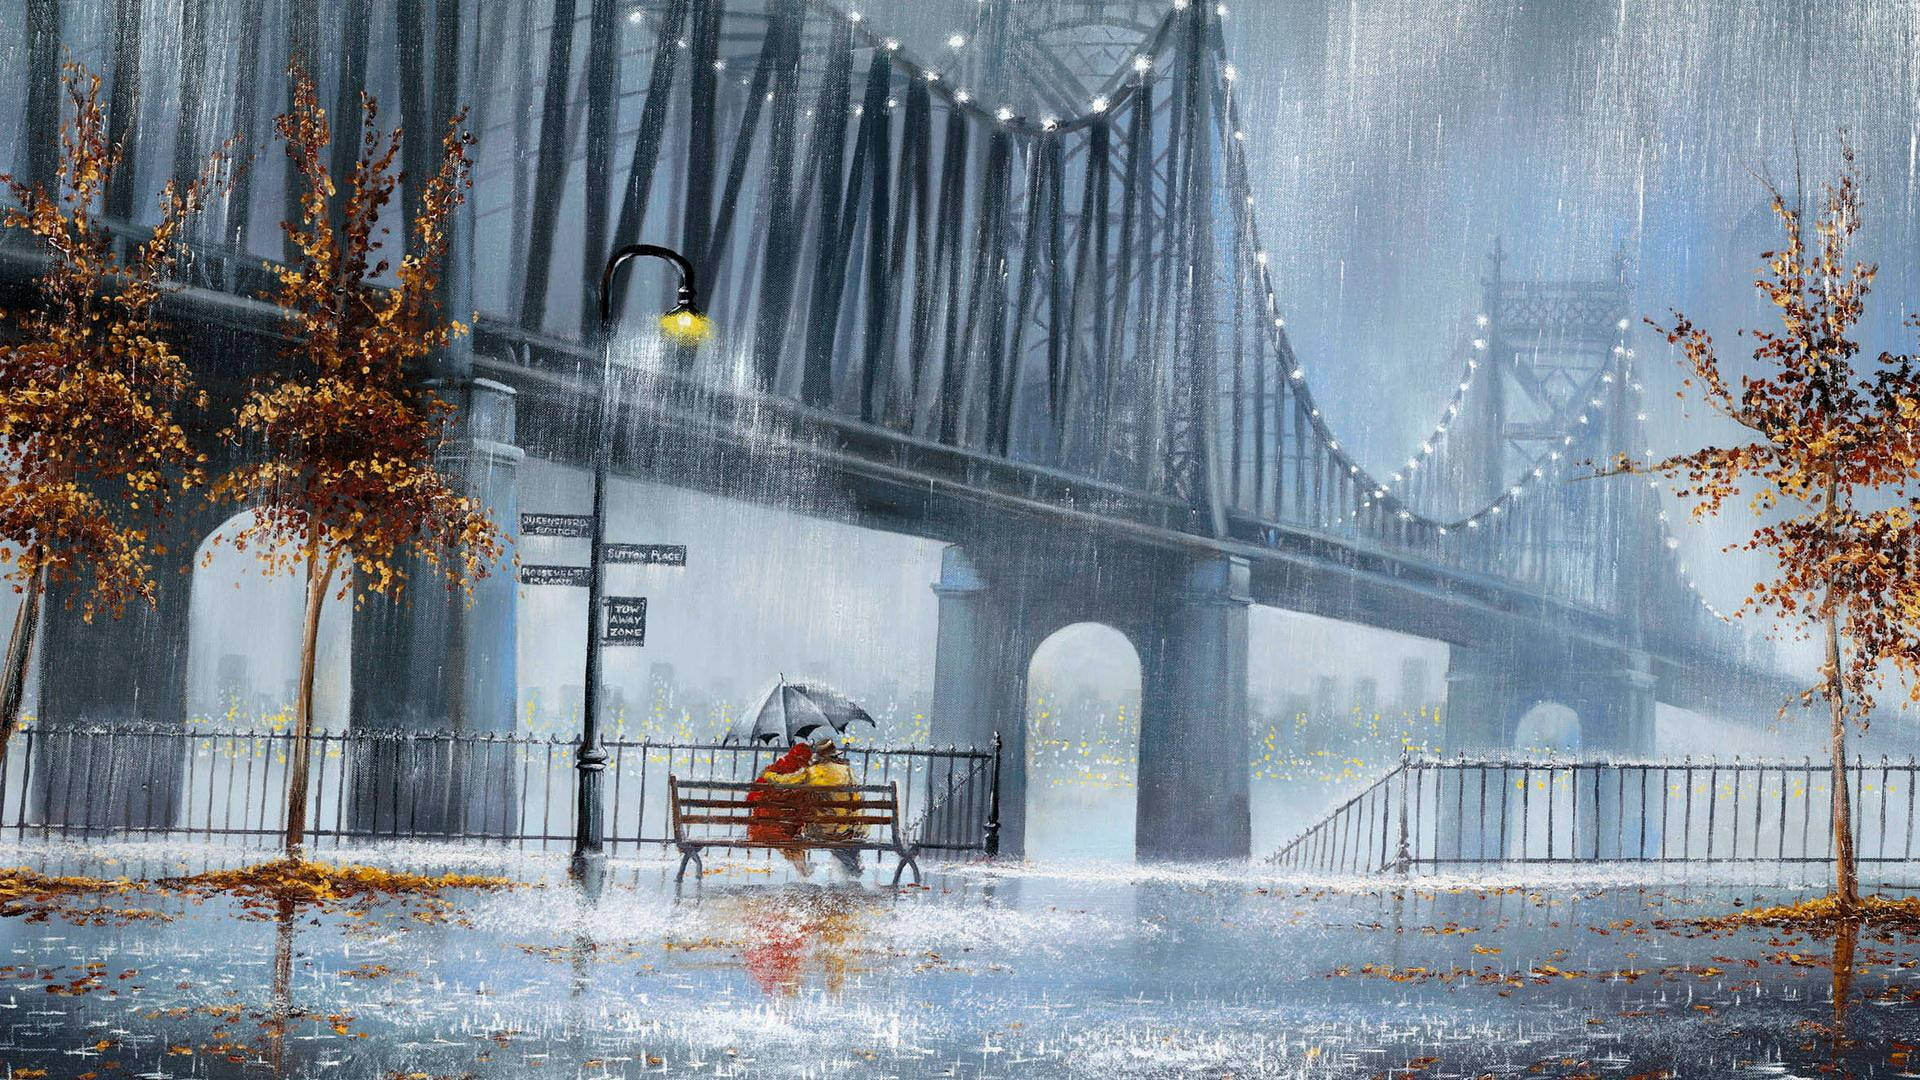 Hình nền Mưa đẹp gần cây cầu sẽ cho bạn cảm giác như đang đứng dưới mưa nghe tiếng nước chảy và gió thổi. Tải hình nền này để tạo cảm giác thư giãn và yên bình vào mỗi khi nhìn vào màn hình điện thoại hoặc máy tính của bạn.